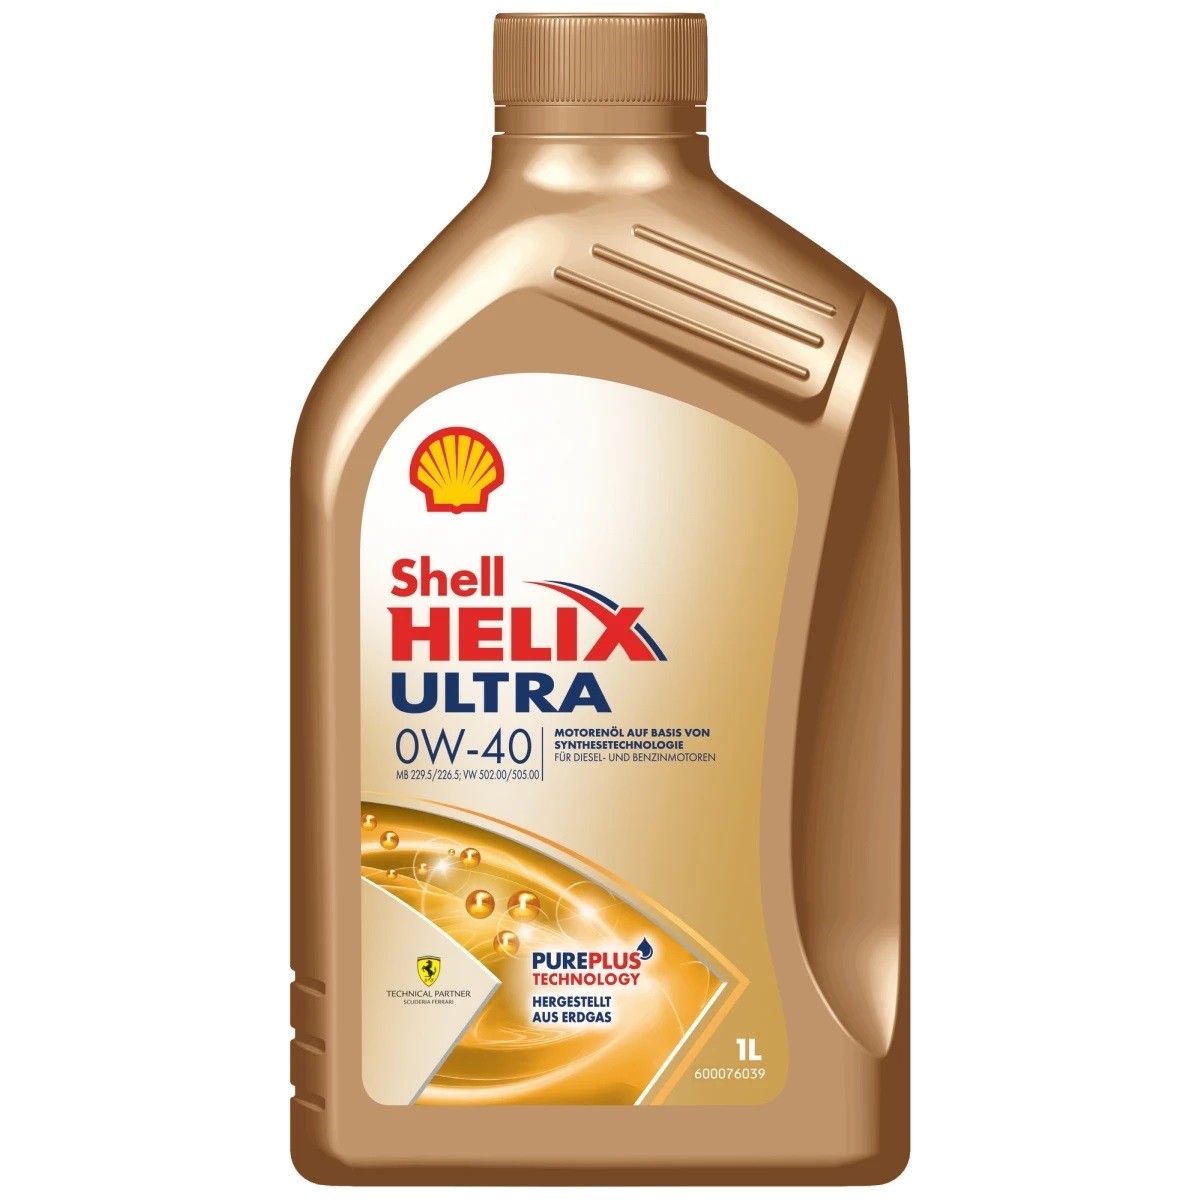 SHELL Helix Ultra 0W 40 MB 229.5 1l